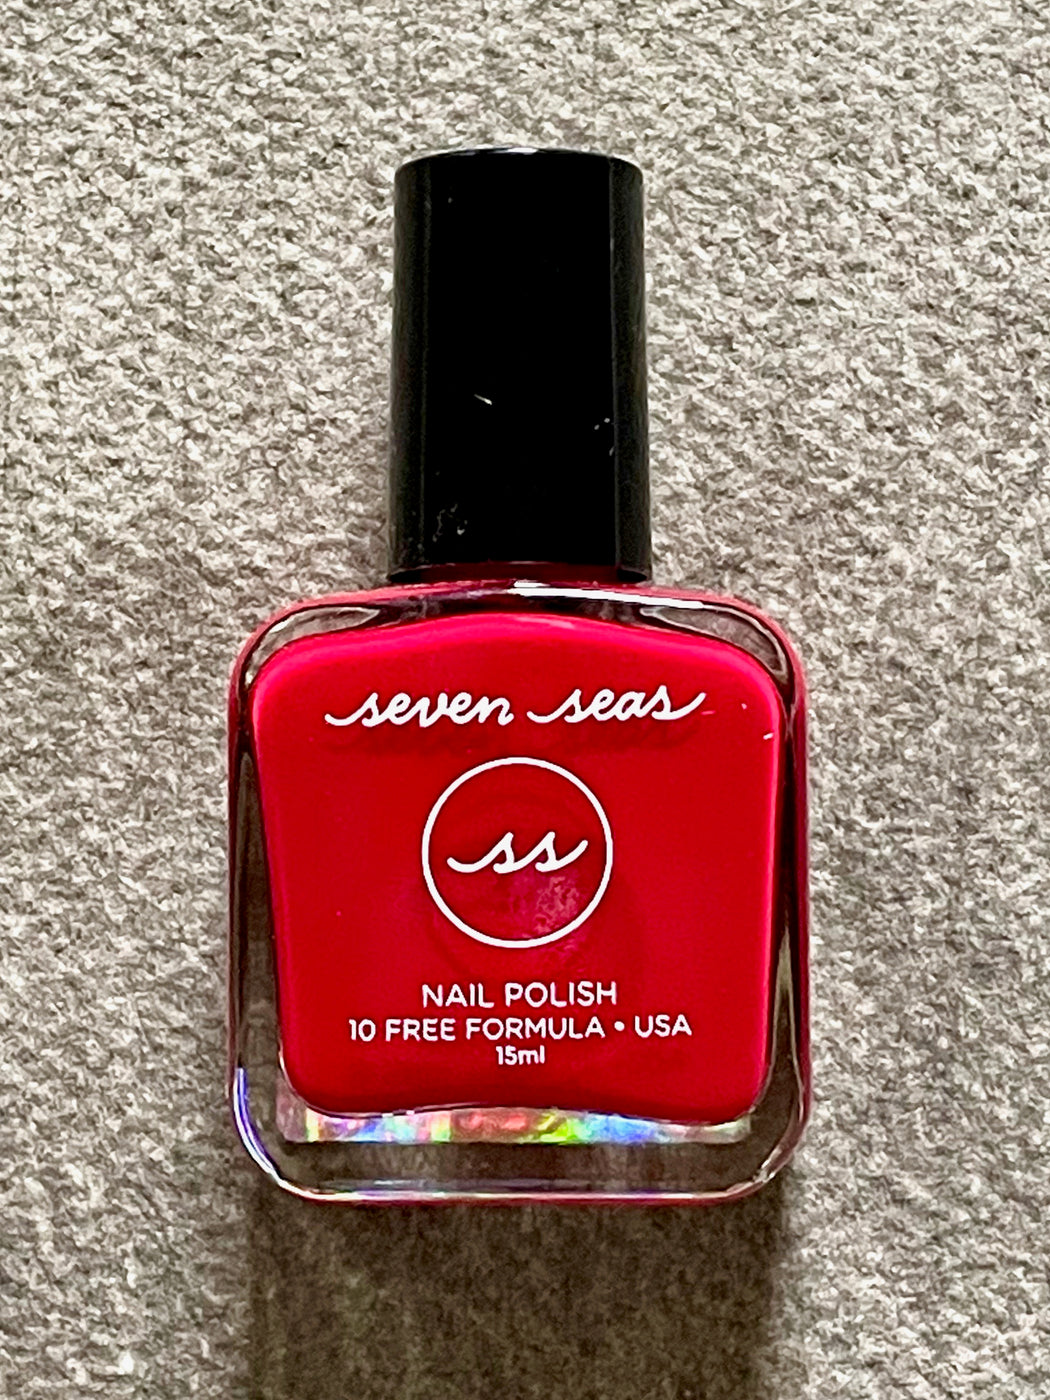 Seven Seas CLEAN Nail Polish - Hibiscus